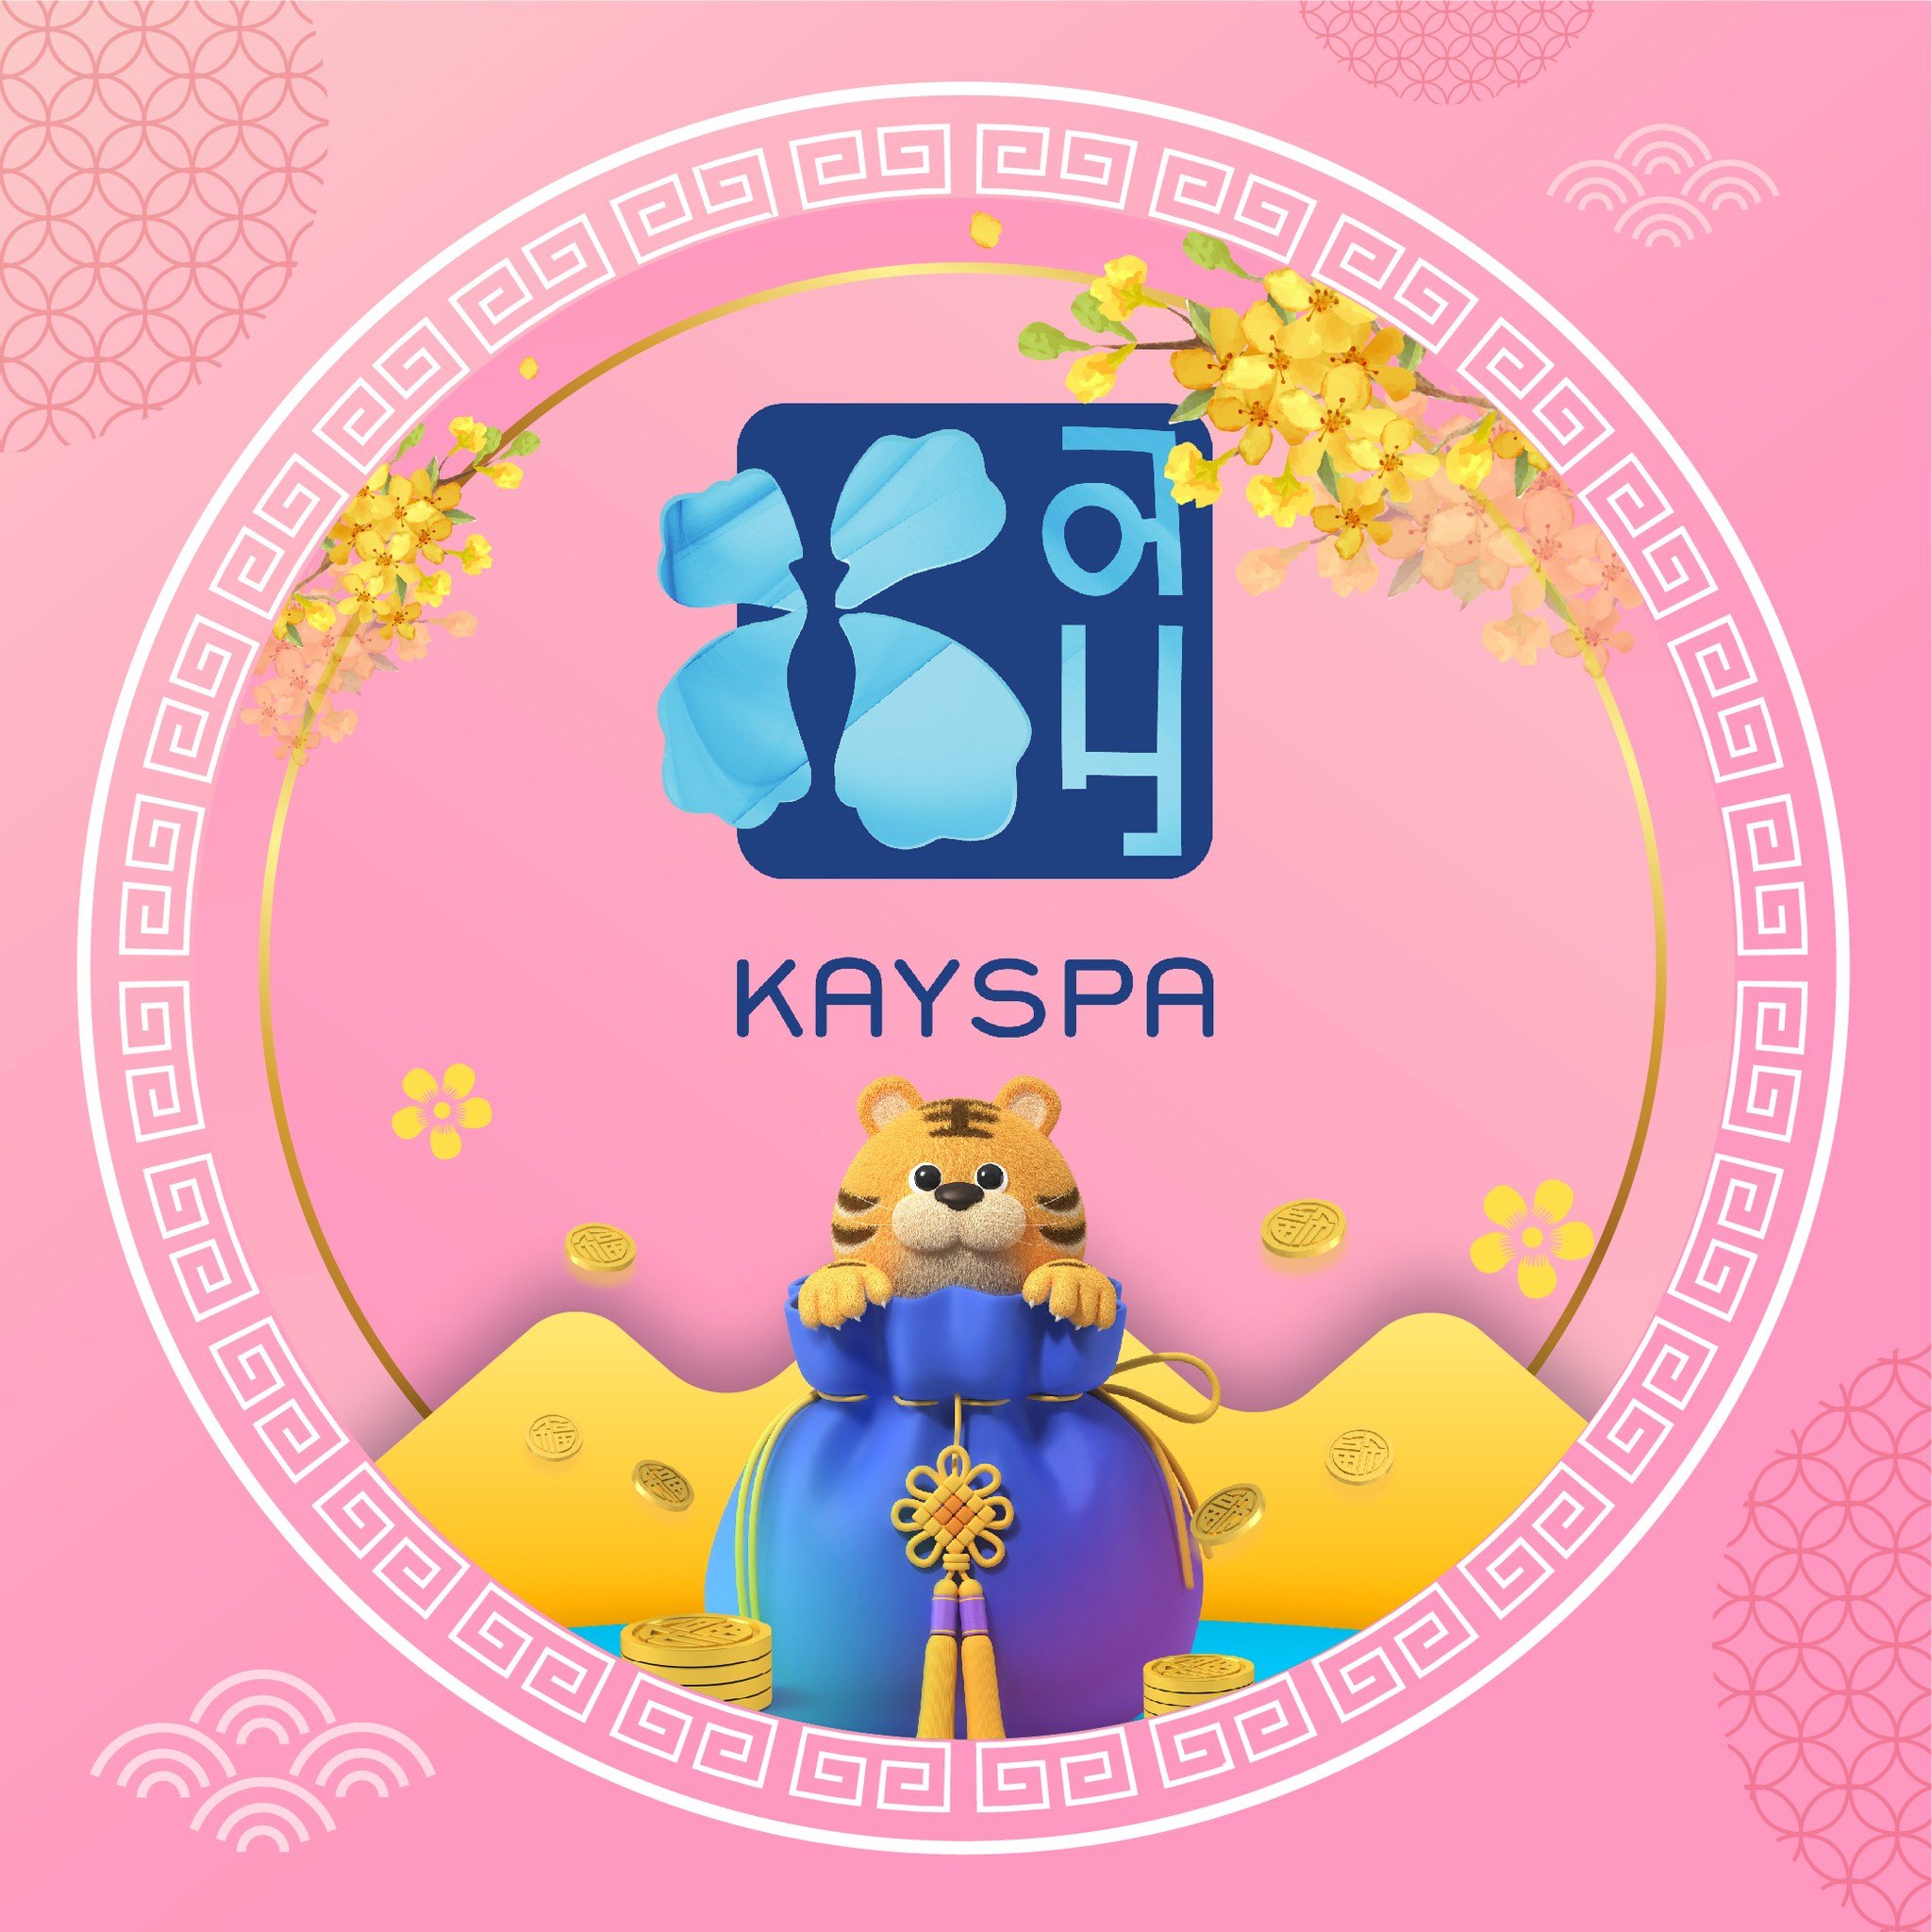 Kay Spa Đà Lạt - Skin Care & Beauty Clinic ảnh 1